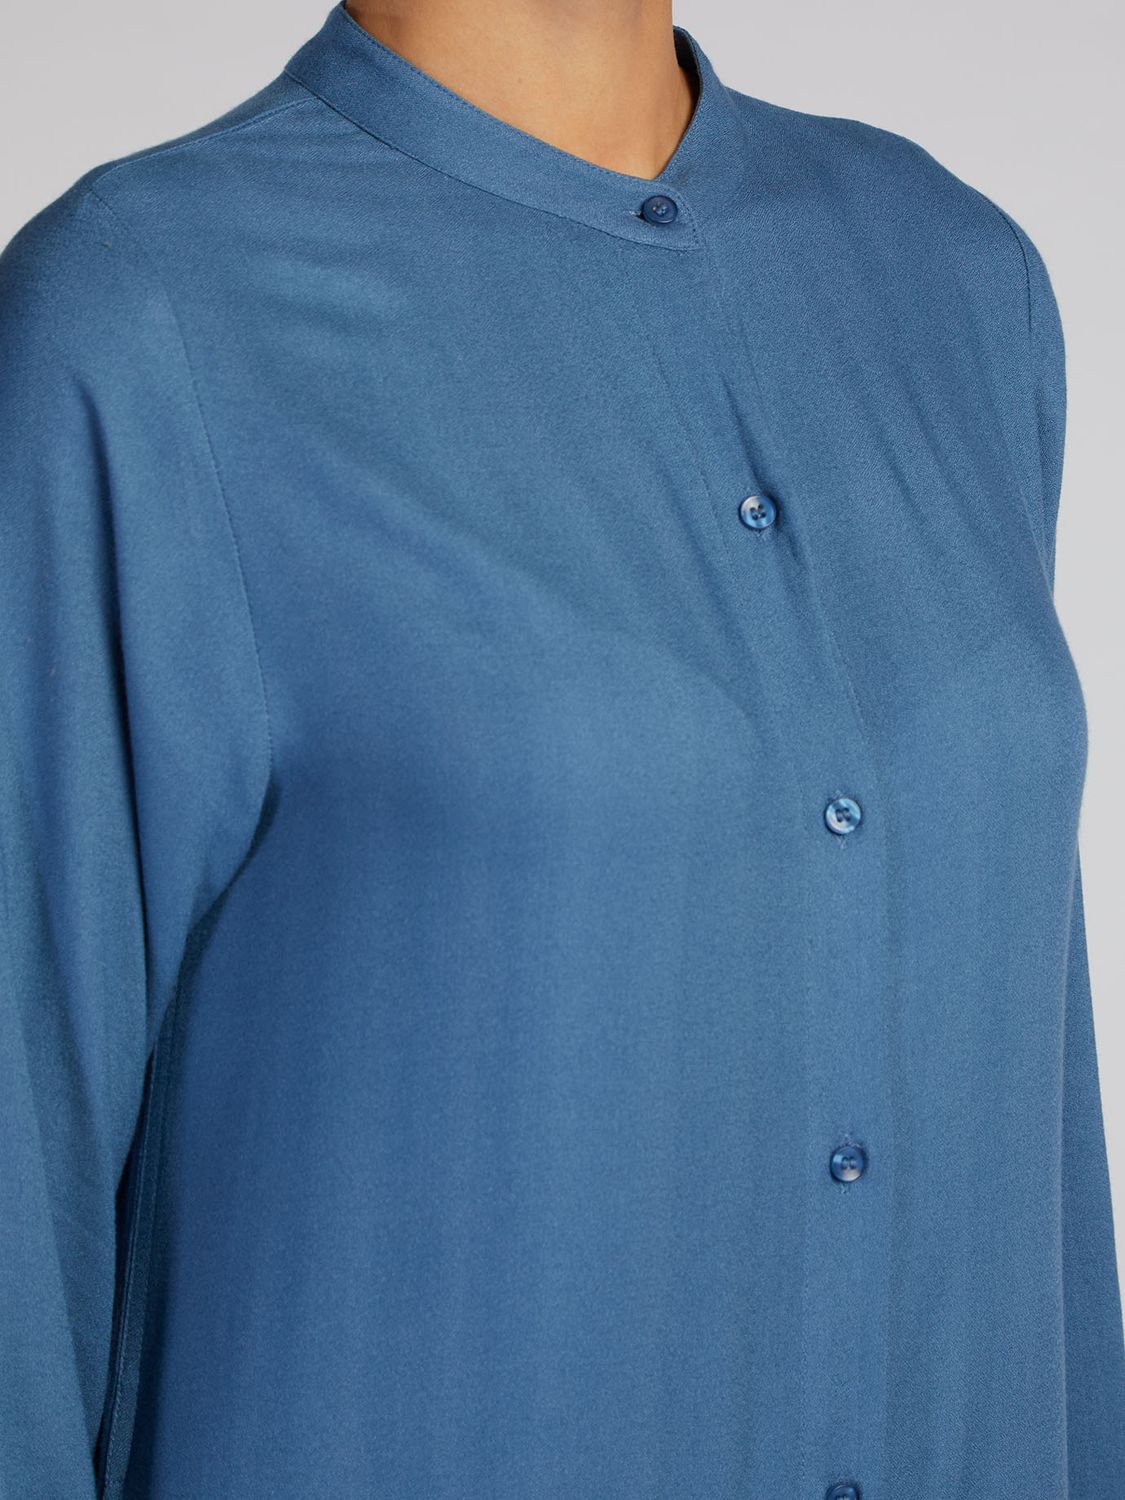 Buy Aab Kaftan Shift Dress, Blue Online at johnlewis.com